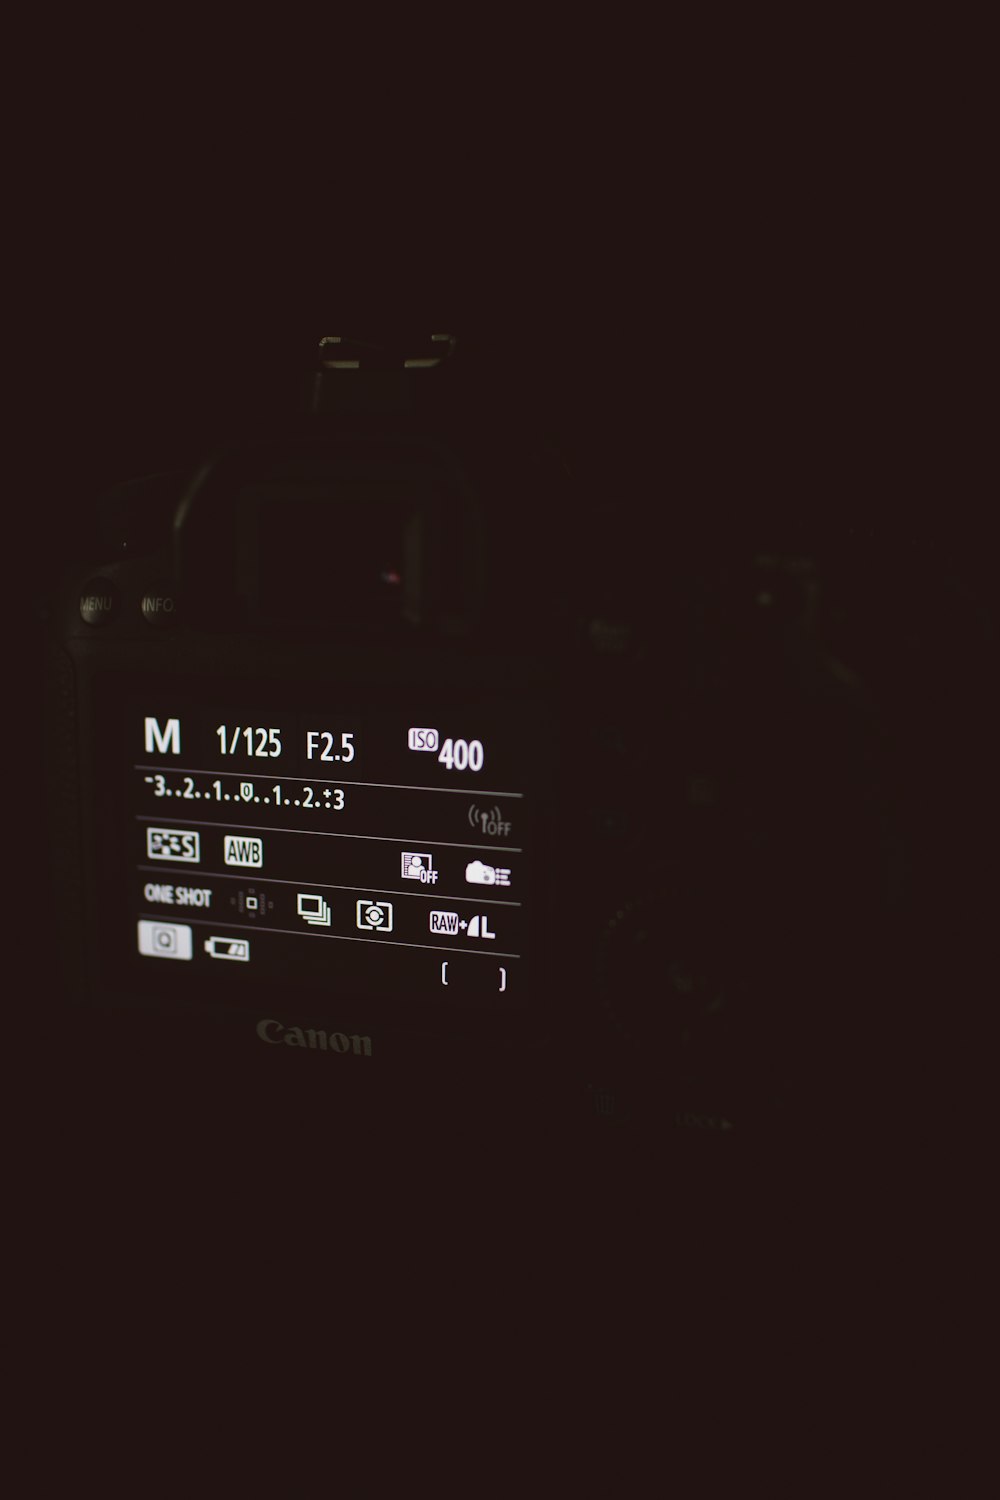 fotocamera reflex digitale Canon nera accesa